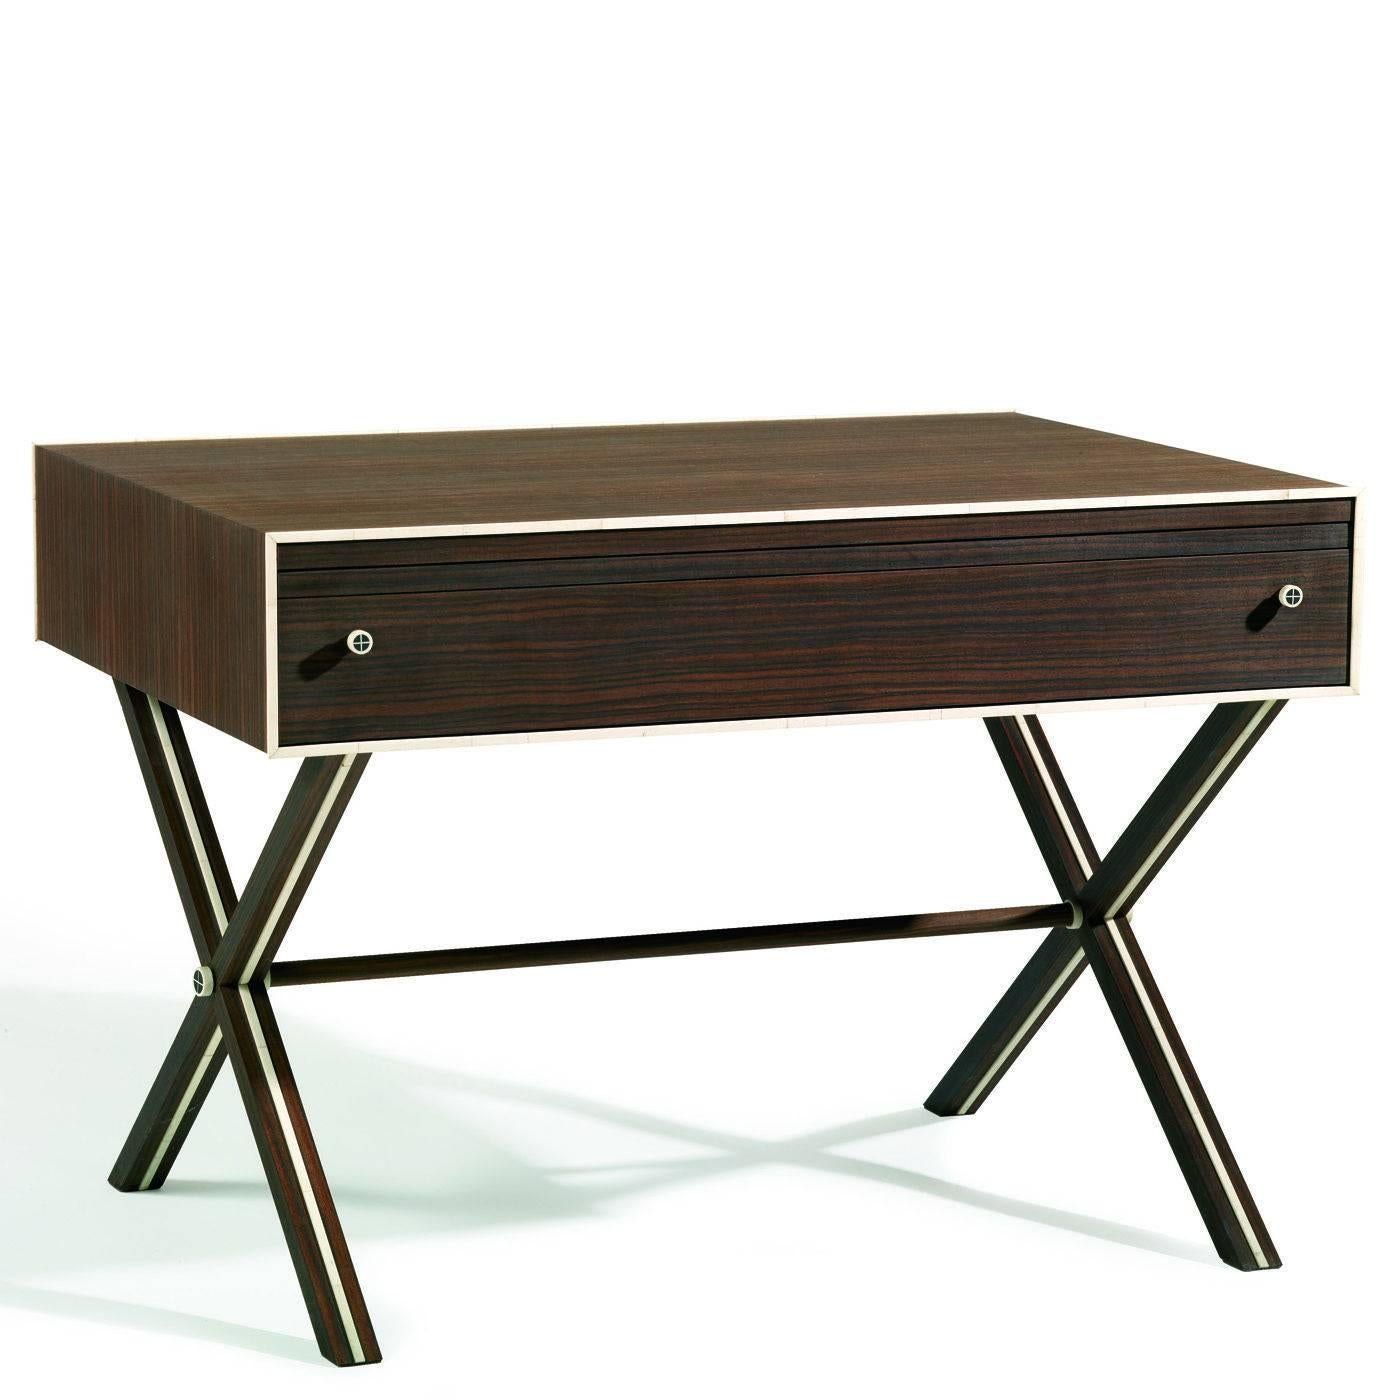 Cette élégante table est plaquée en bois de Macassar ébène. Il comporte un tiroir (avec compartiment interne) et une surface extractible. L'extérieur est orné de détails en corne sur le pourtour de la façade et à l'intérieur des quatre pieds